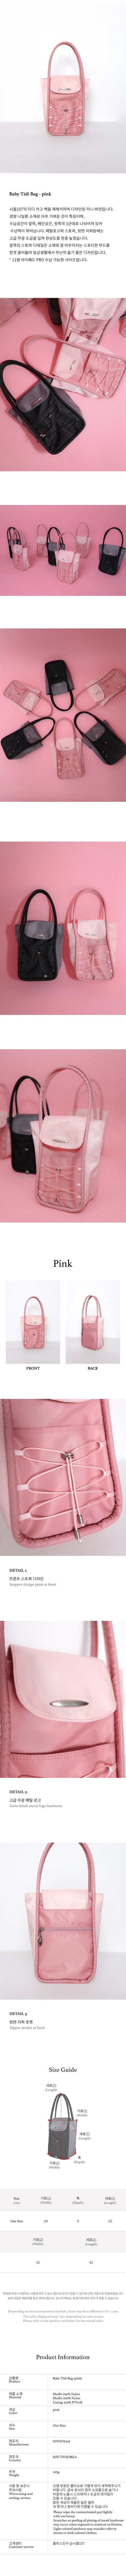 baby tidi bag (pink)